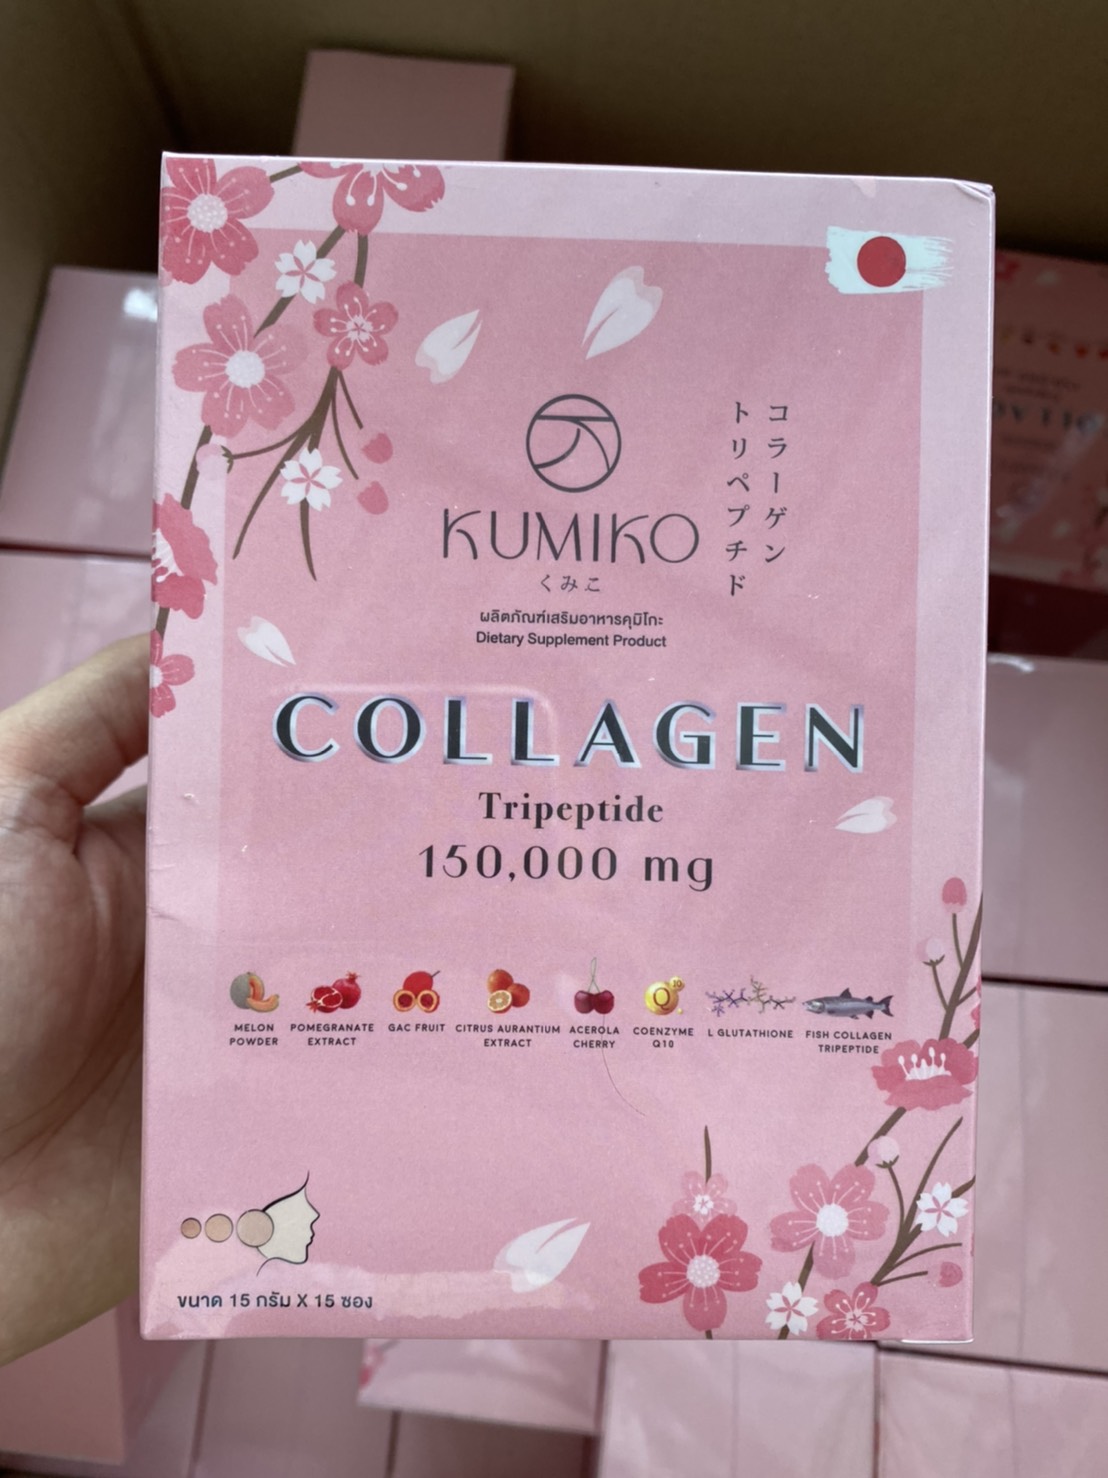 คูมิโกะ คอลลาเจน Kumiko Collagen 1 กล่อง บรรจุ 15 ซอง ชุดผลิตภัณฑ์อาหารเสริมเพื่อผิวสวย